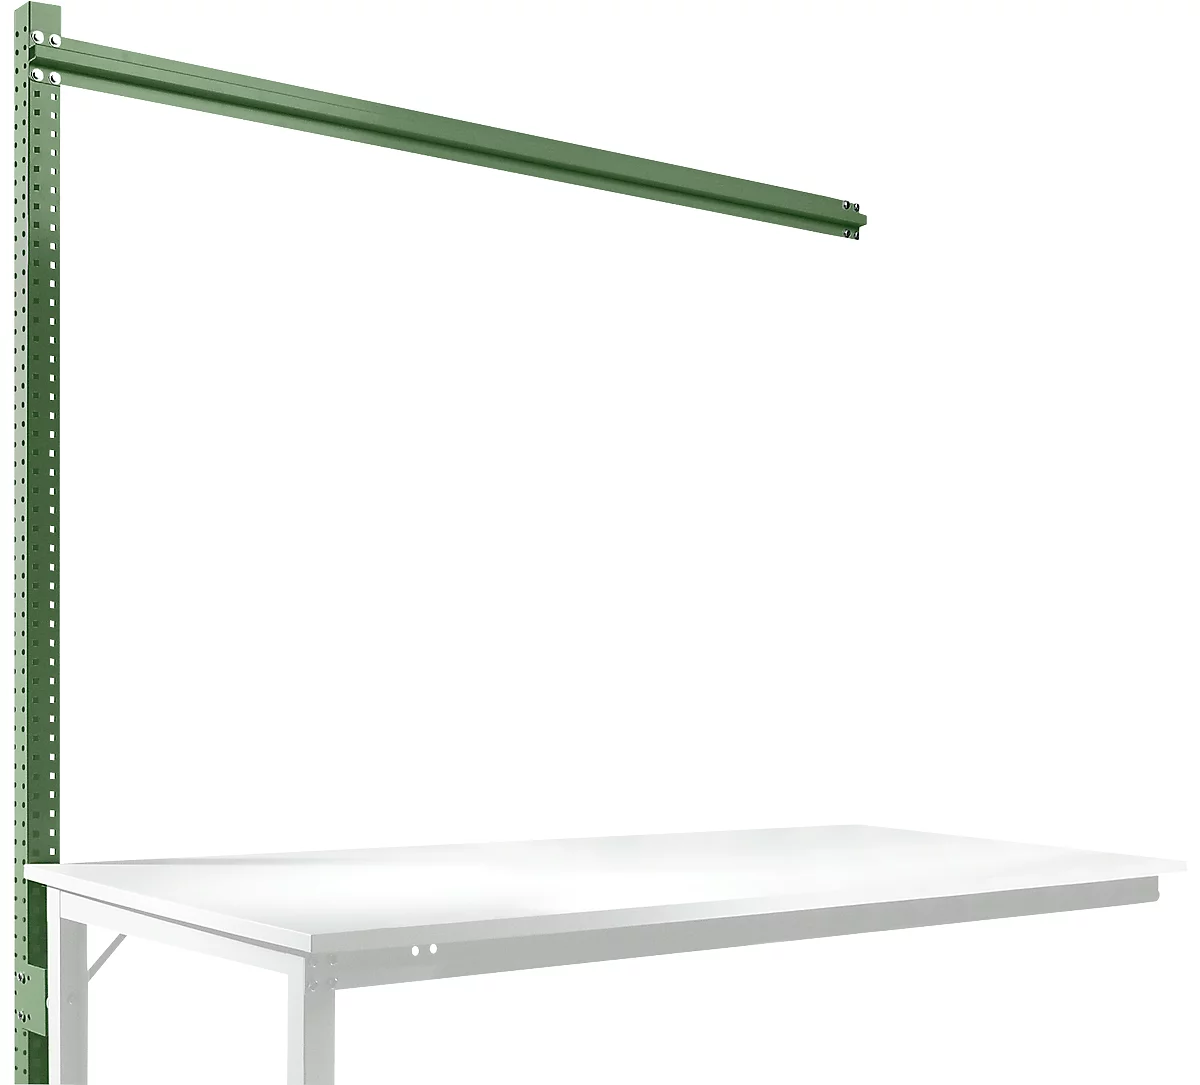 Estructura pórtica adicional para mesa de extensión STANDARD sistema mesa de trabajo/banco de trabajo UNIVERSAL/PROFI, 1750 mm, verde reseda